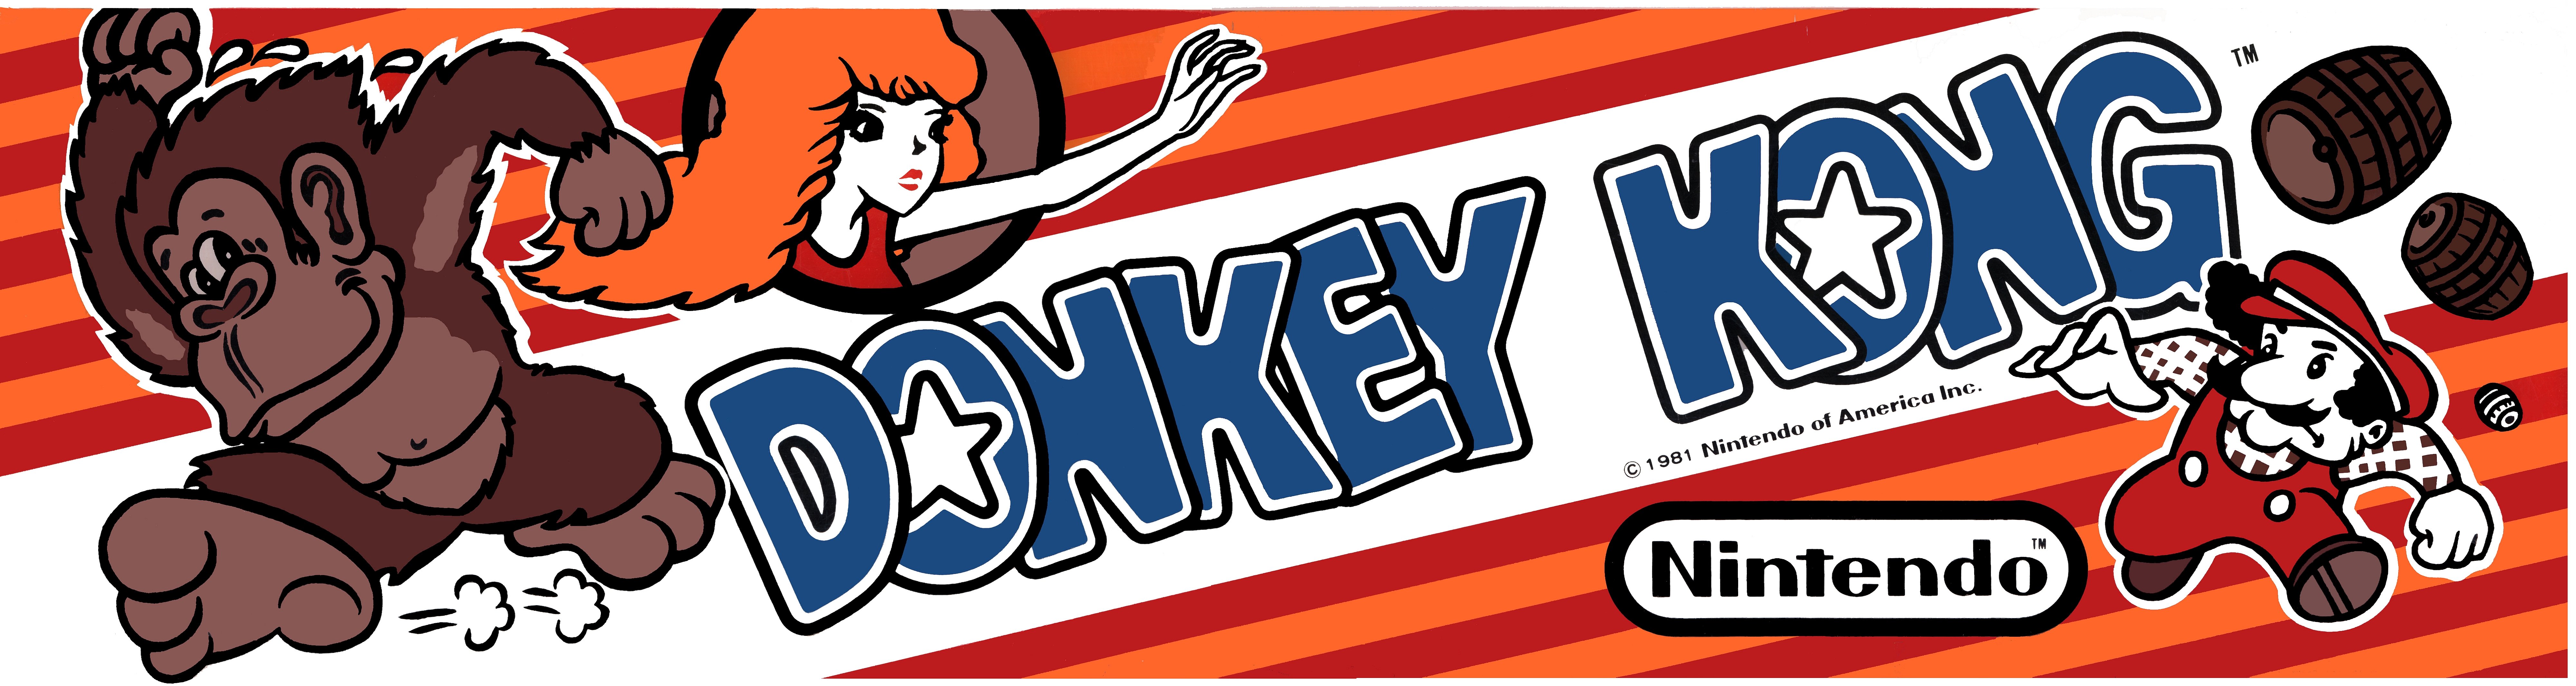 Descarga gratuita de fondo de pantalla para móvil de Donkey Kong, Videojuego.